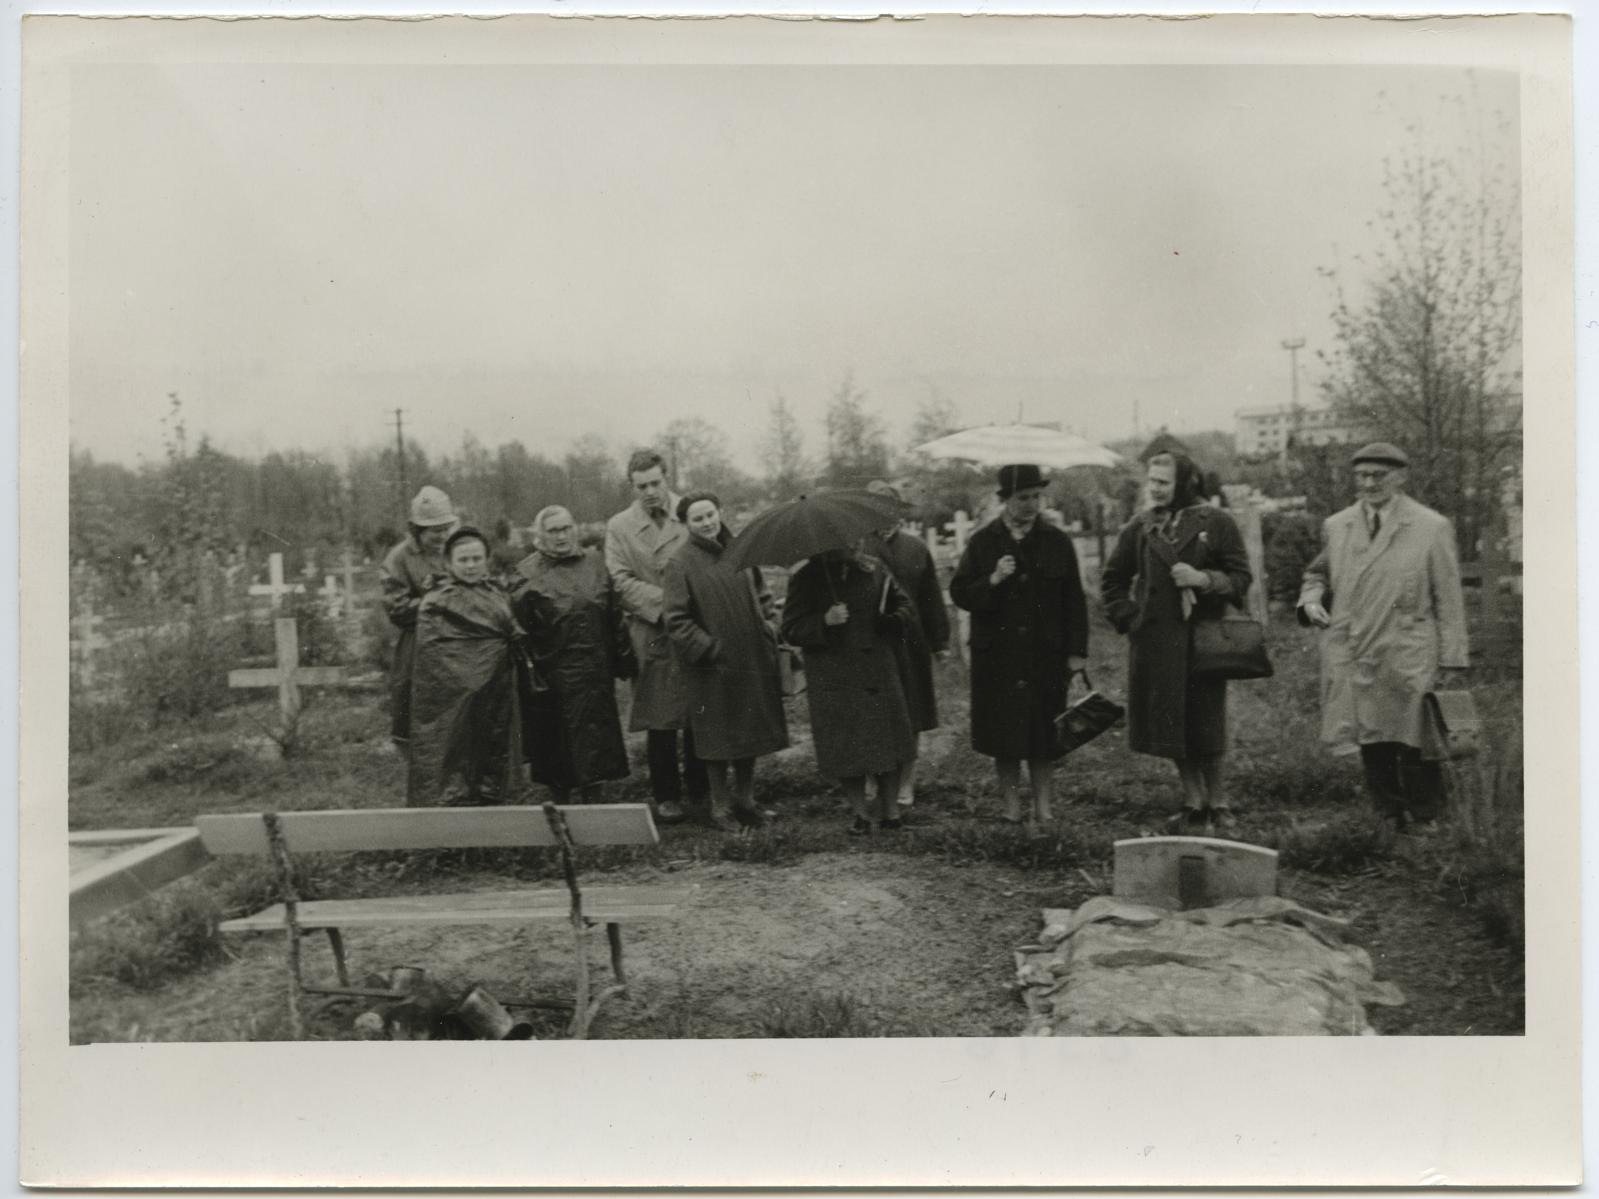 I lennu aktiiv ekskursioonil Ropka-Tamme (Pauluse) kalmistul 12. mail 1964. Kunstnik Kristjan Tedre haua juures.